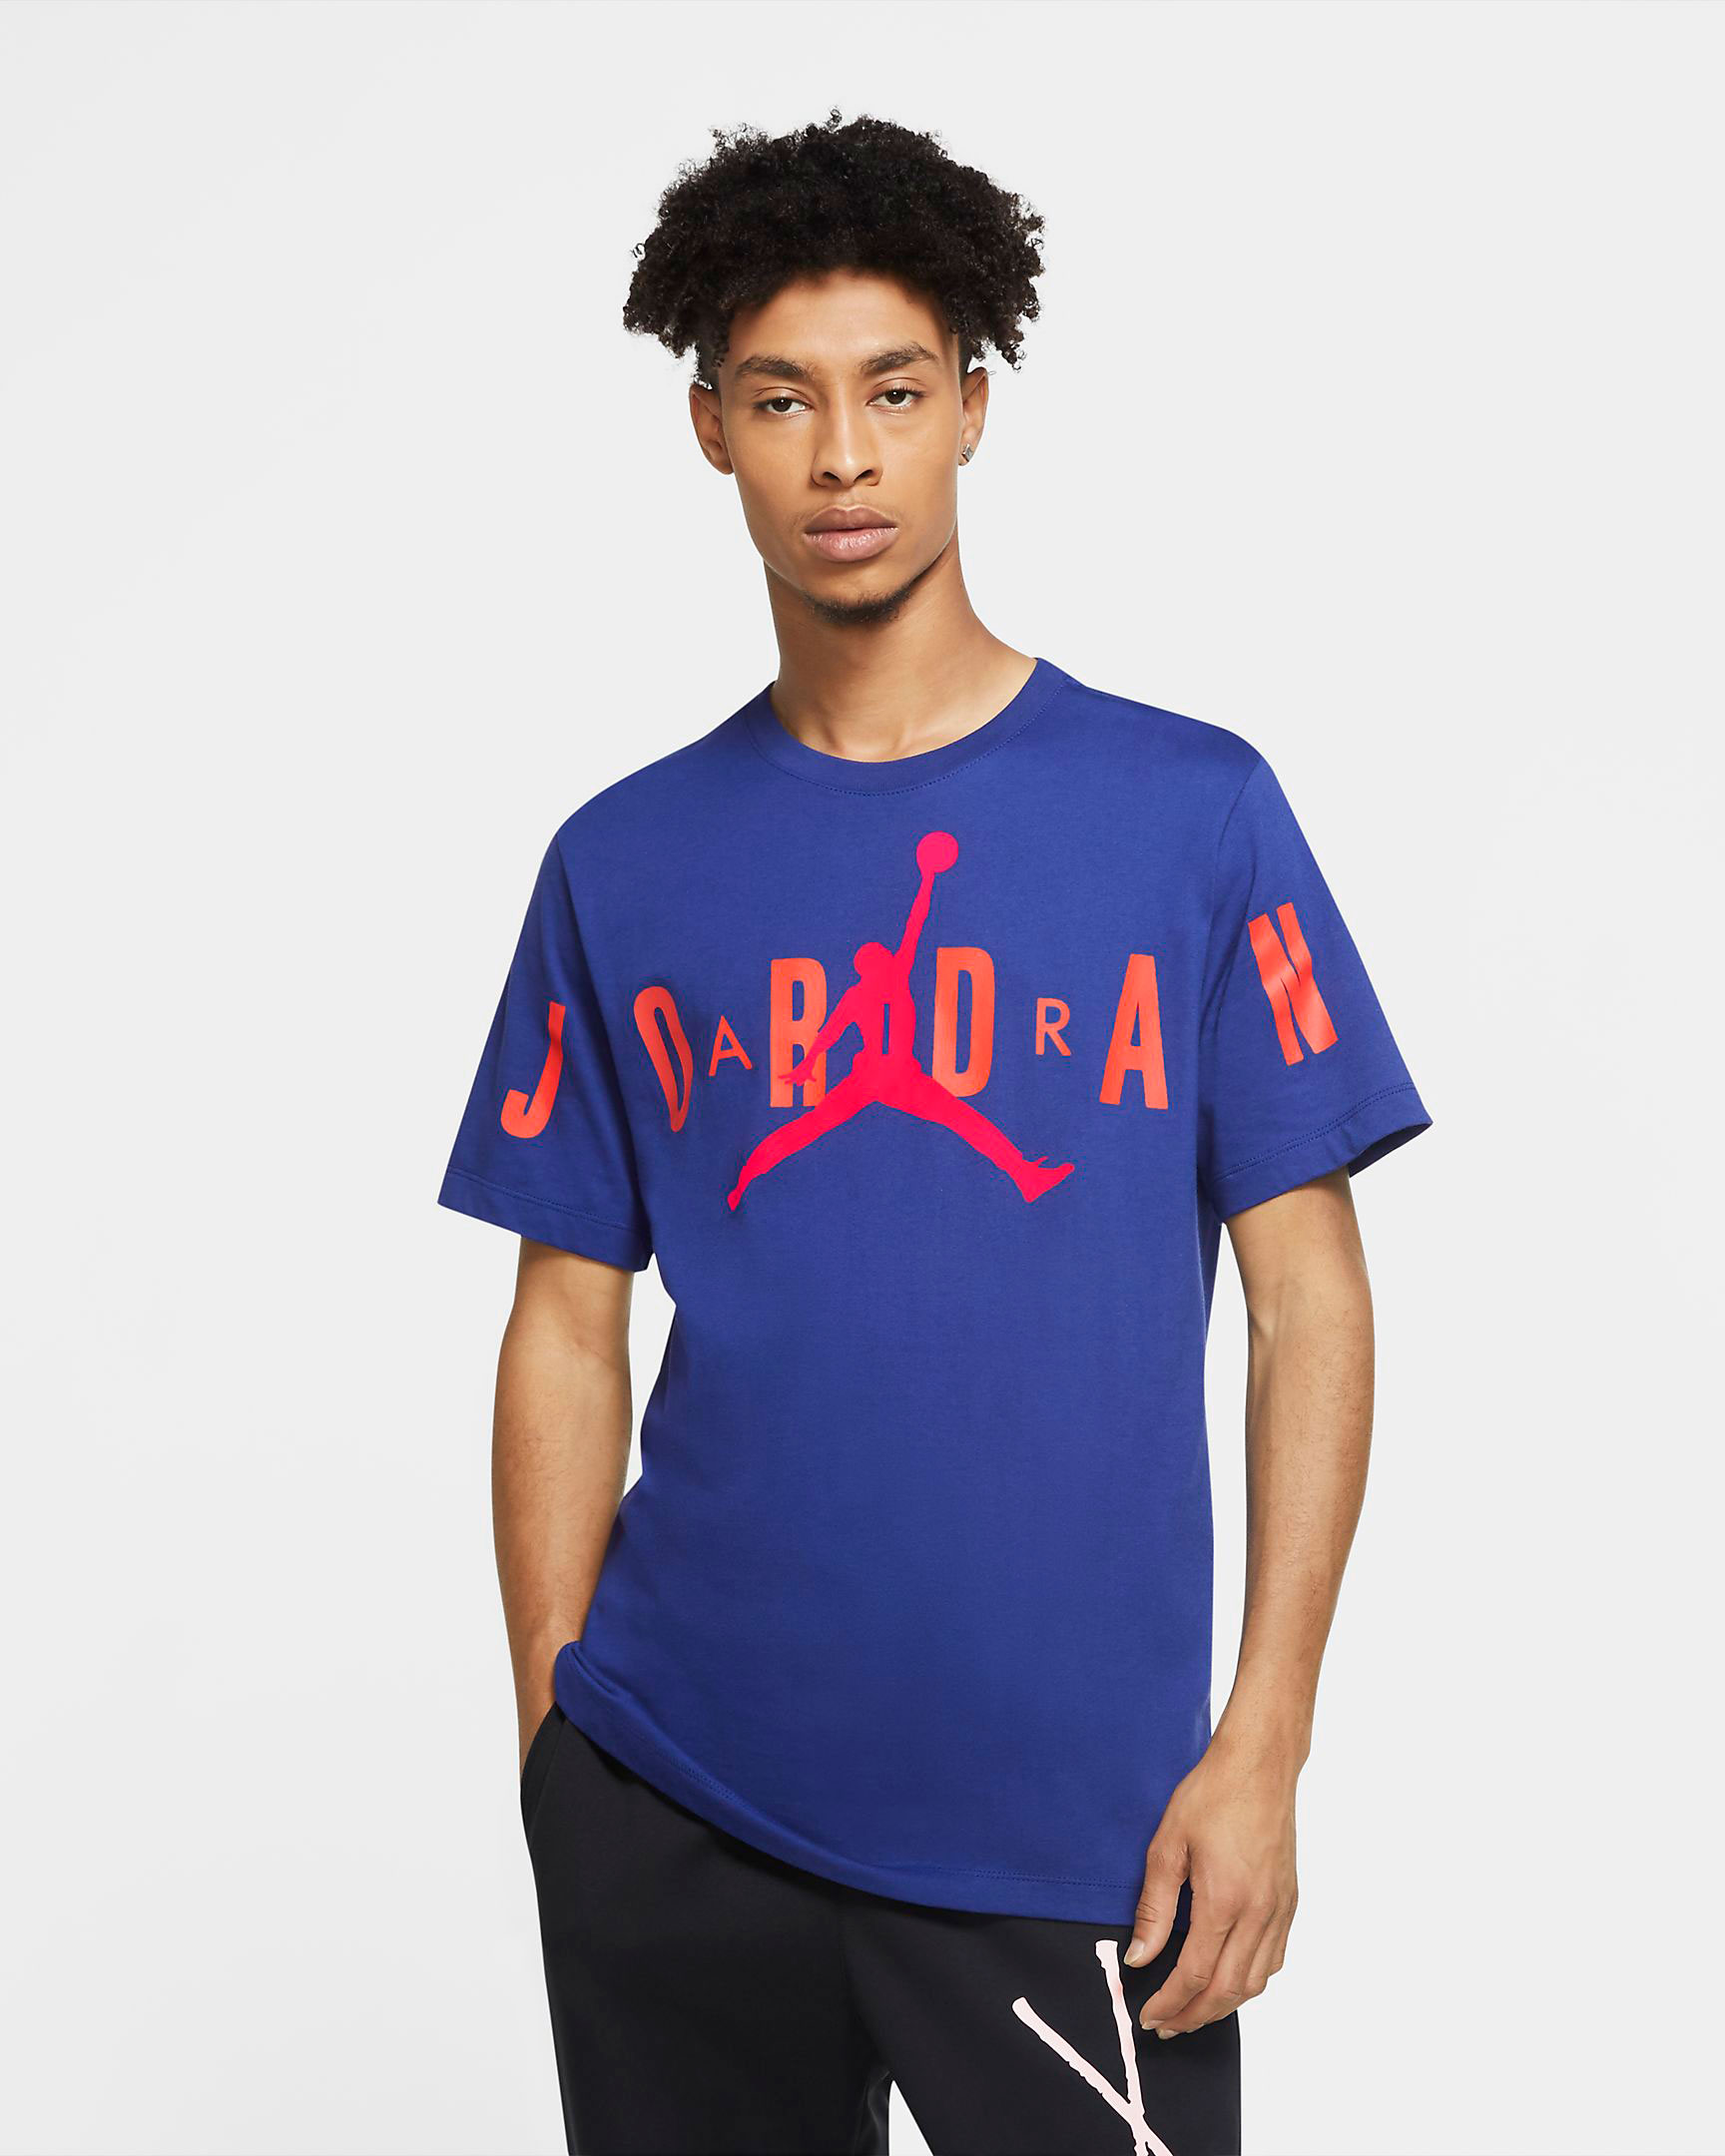 New Jordan Brand Shirts for Summer 2020 | SneakerFits.com